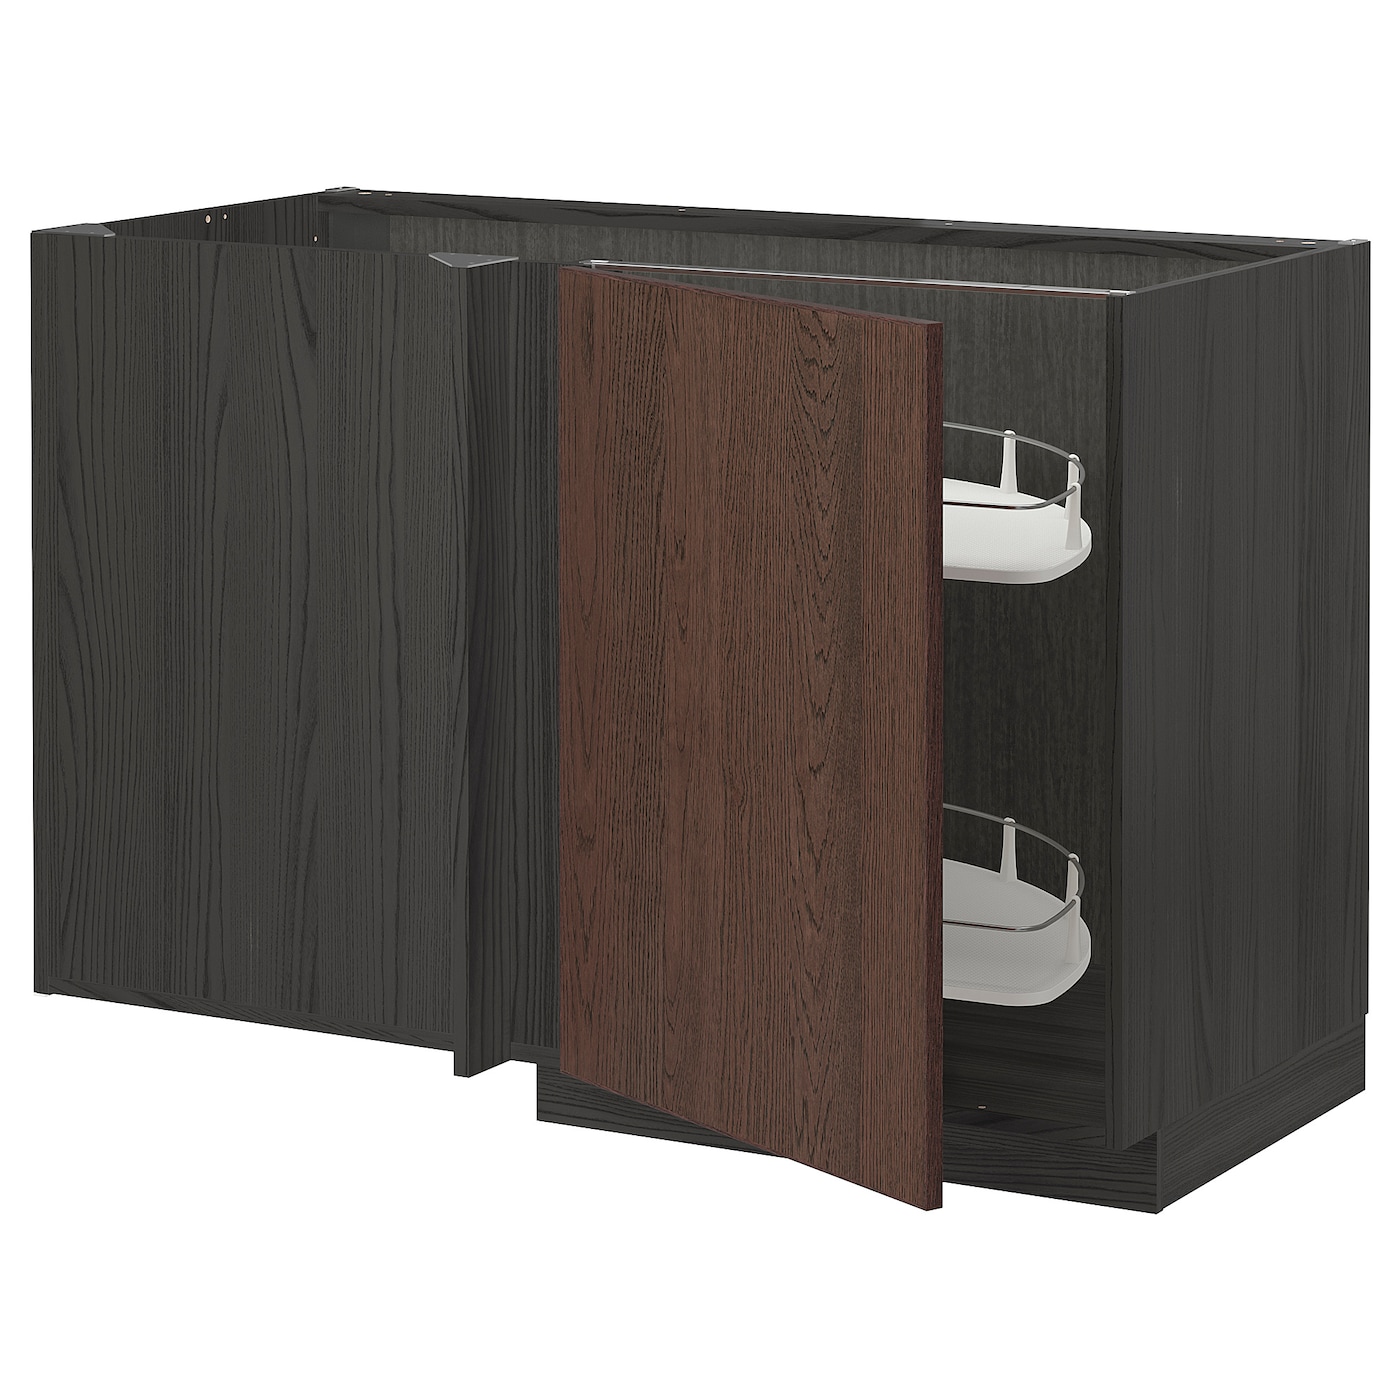 Напольный шкаф - METOD IKEA/ МЕТОД ИКЕА,  128х88 см, темно-коричневый/коричневый